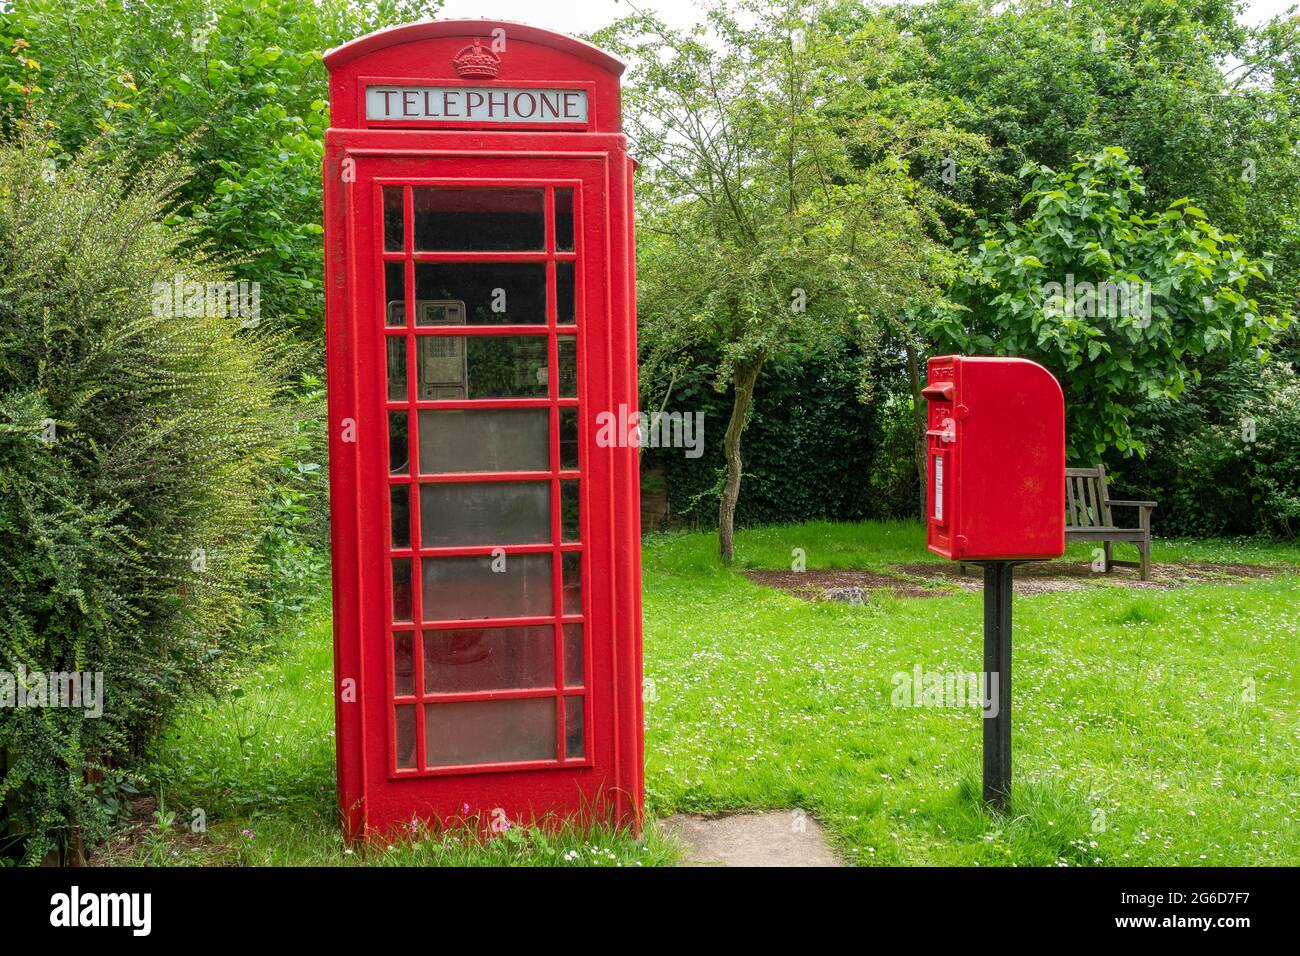 Una scatola telefonica rossa K6 e una scatola di distacco in ghisa montata su palo rosso in un ambiente rurale Foto Stock